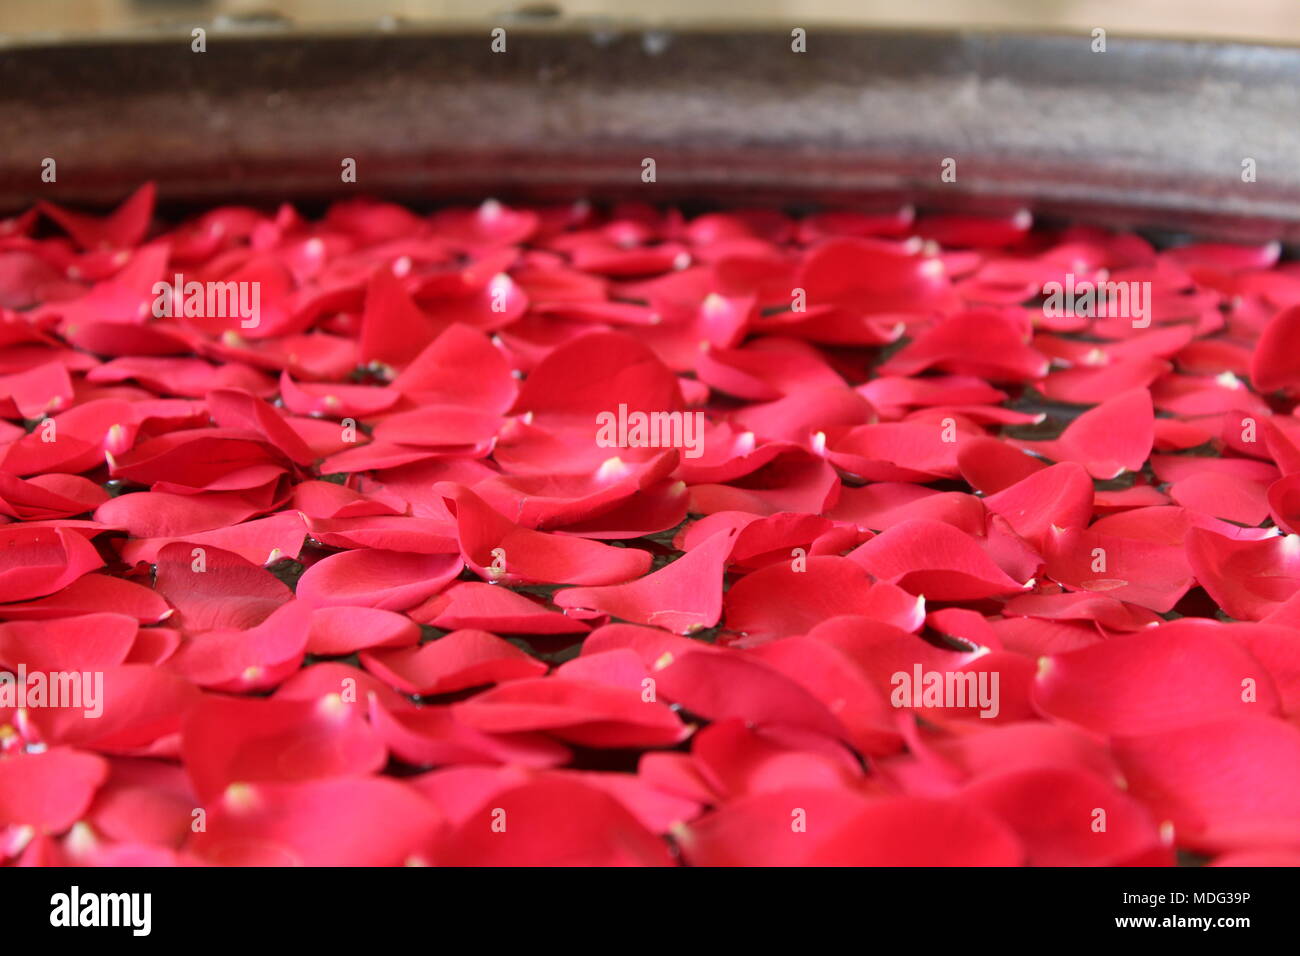 Un aspect coloré dynamique dans un pot rempli d'eau avec de beaux pétales flottant paisiblement. Un regard sur la culture indienne et la créativité. Banque D'Images